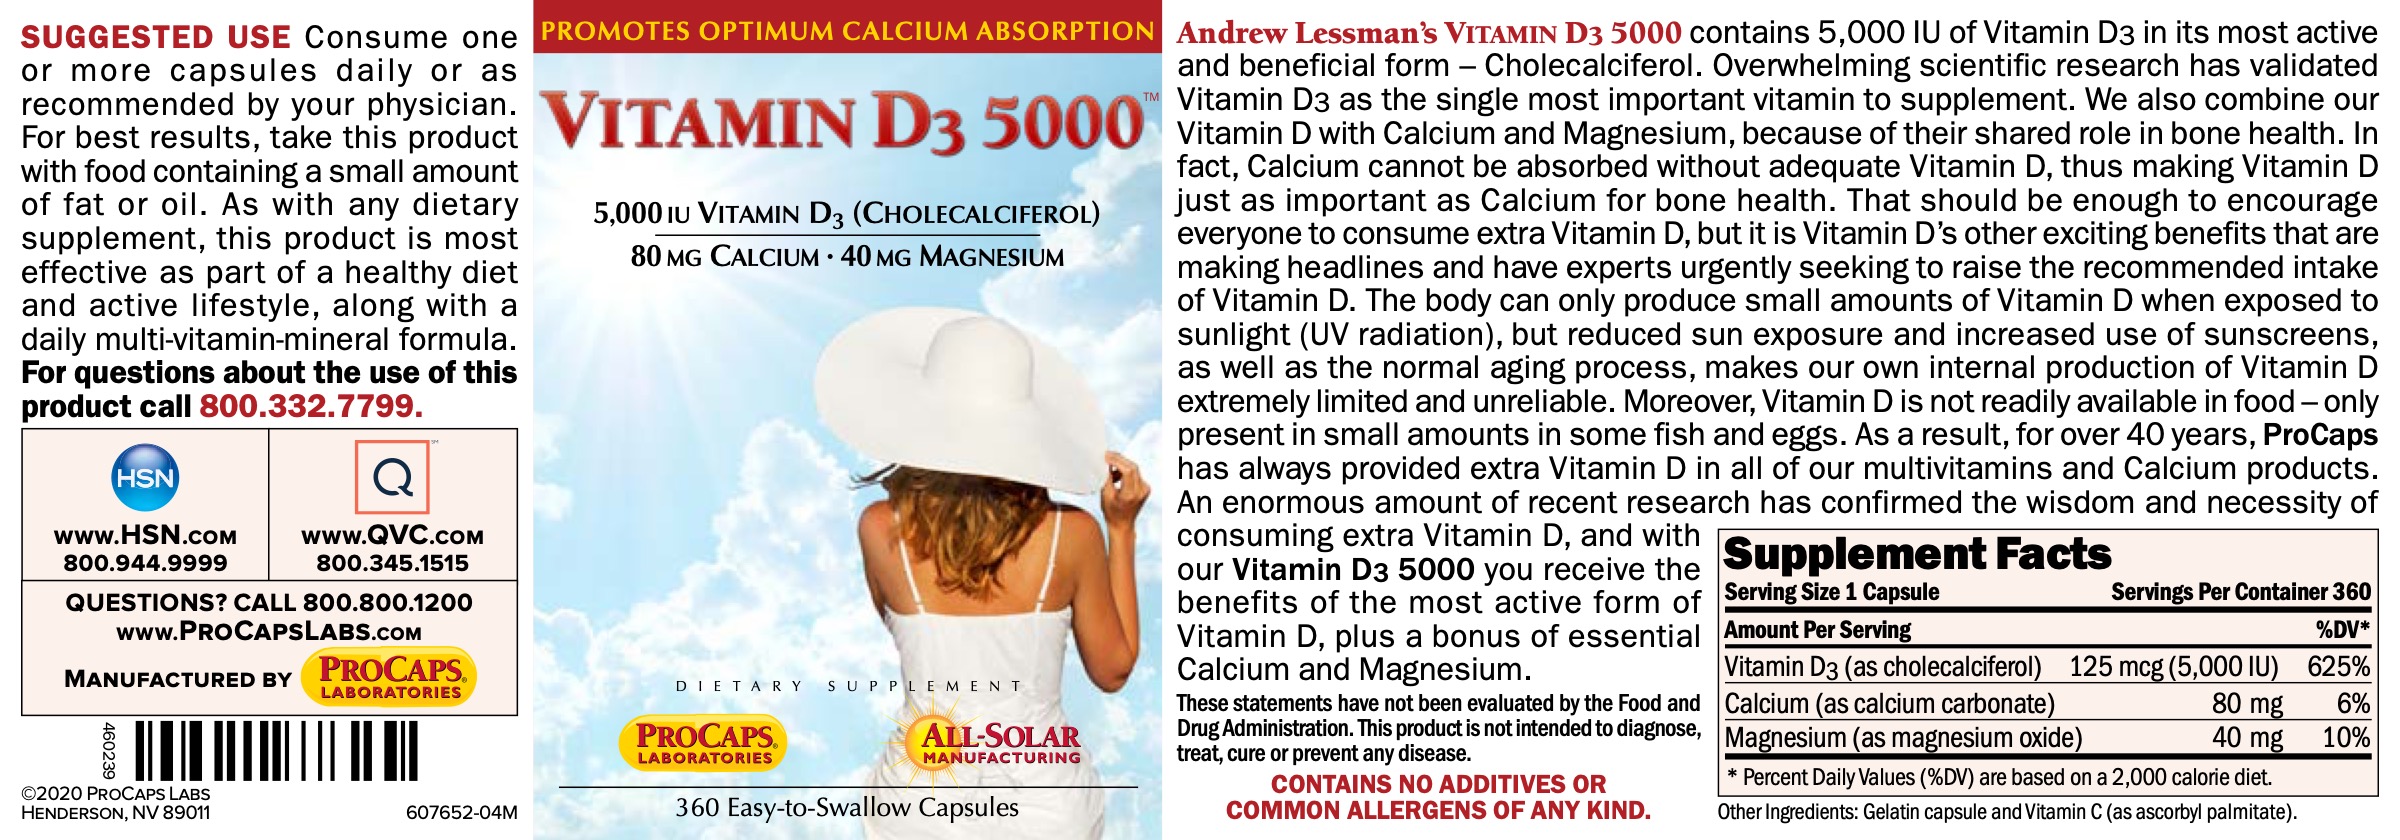 Vitamin-D3-5000-Capsules-Bone-Support